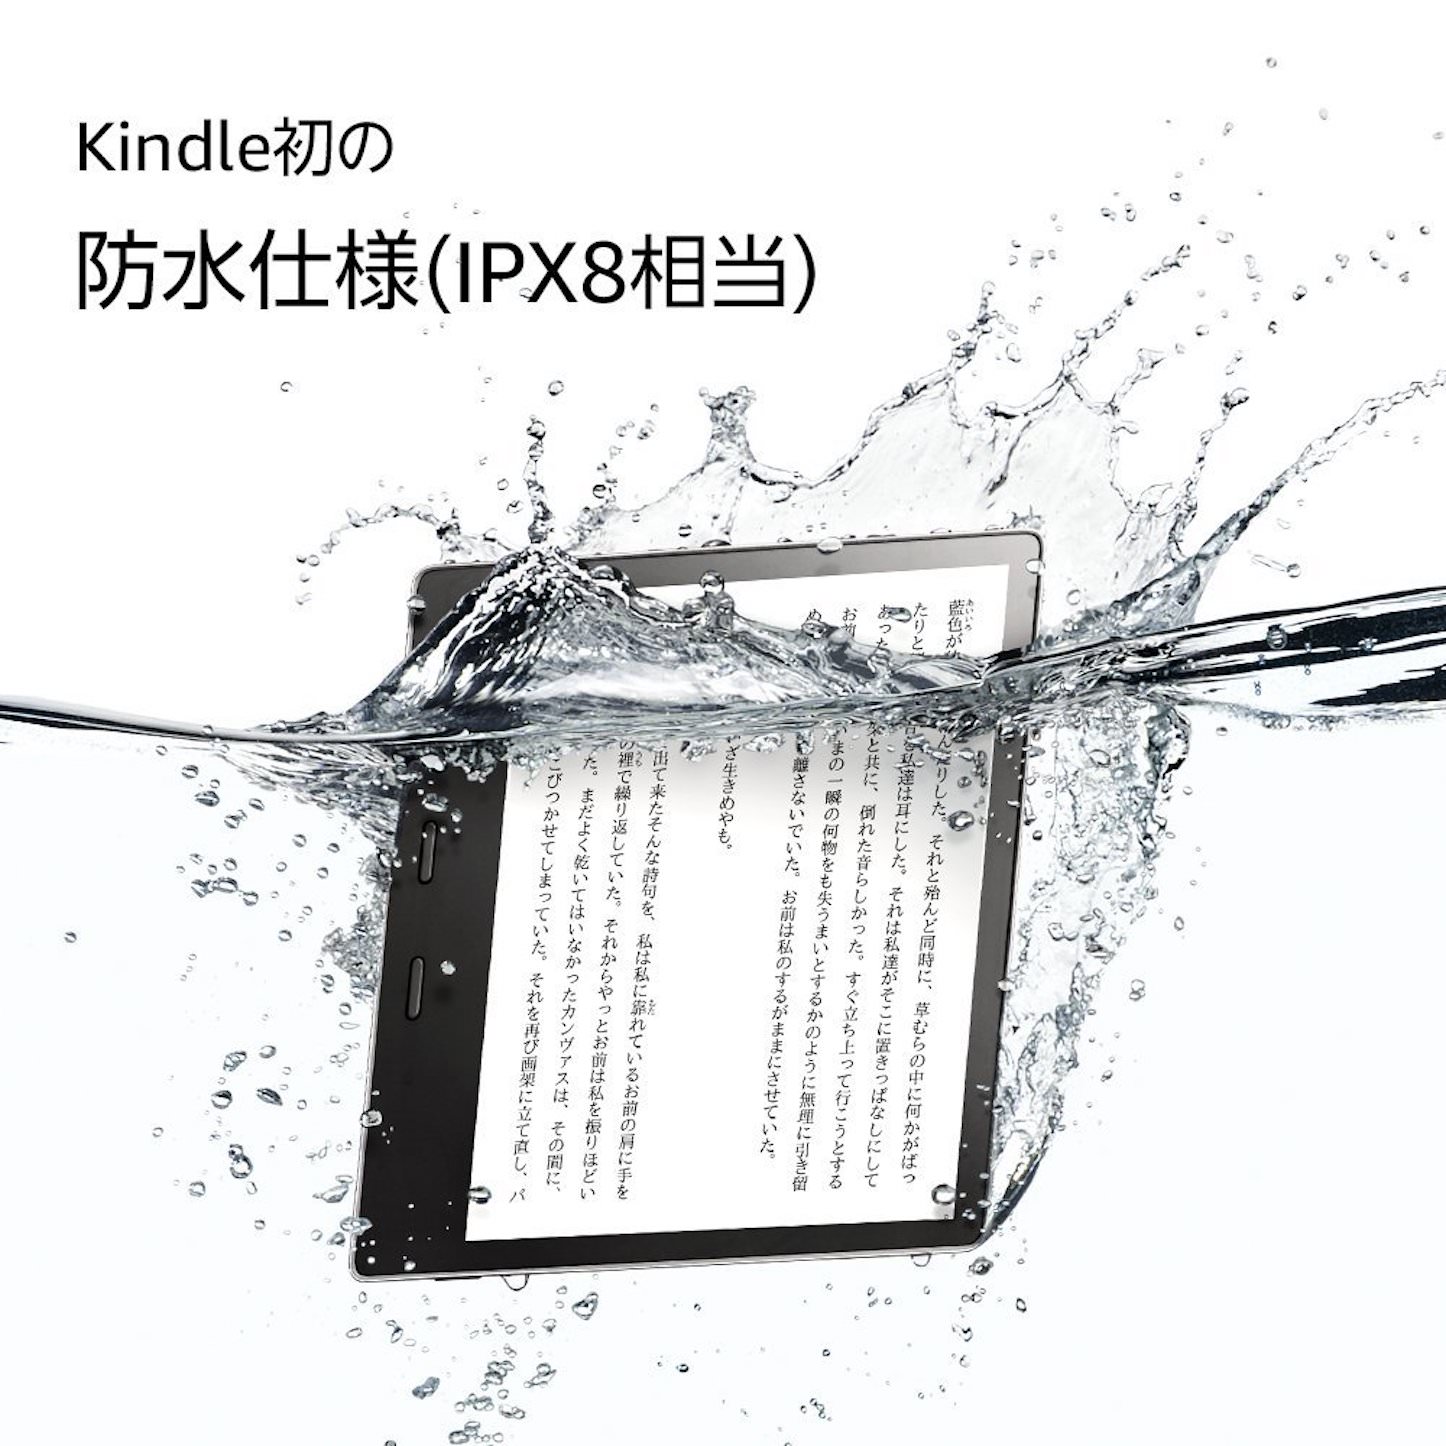 Waterproof-Kindle.jpg